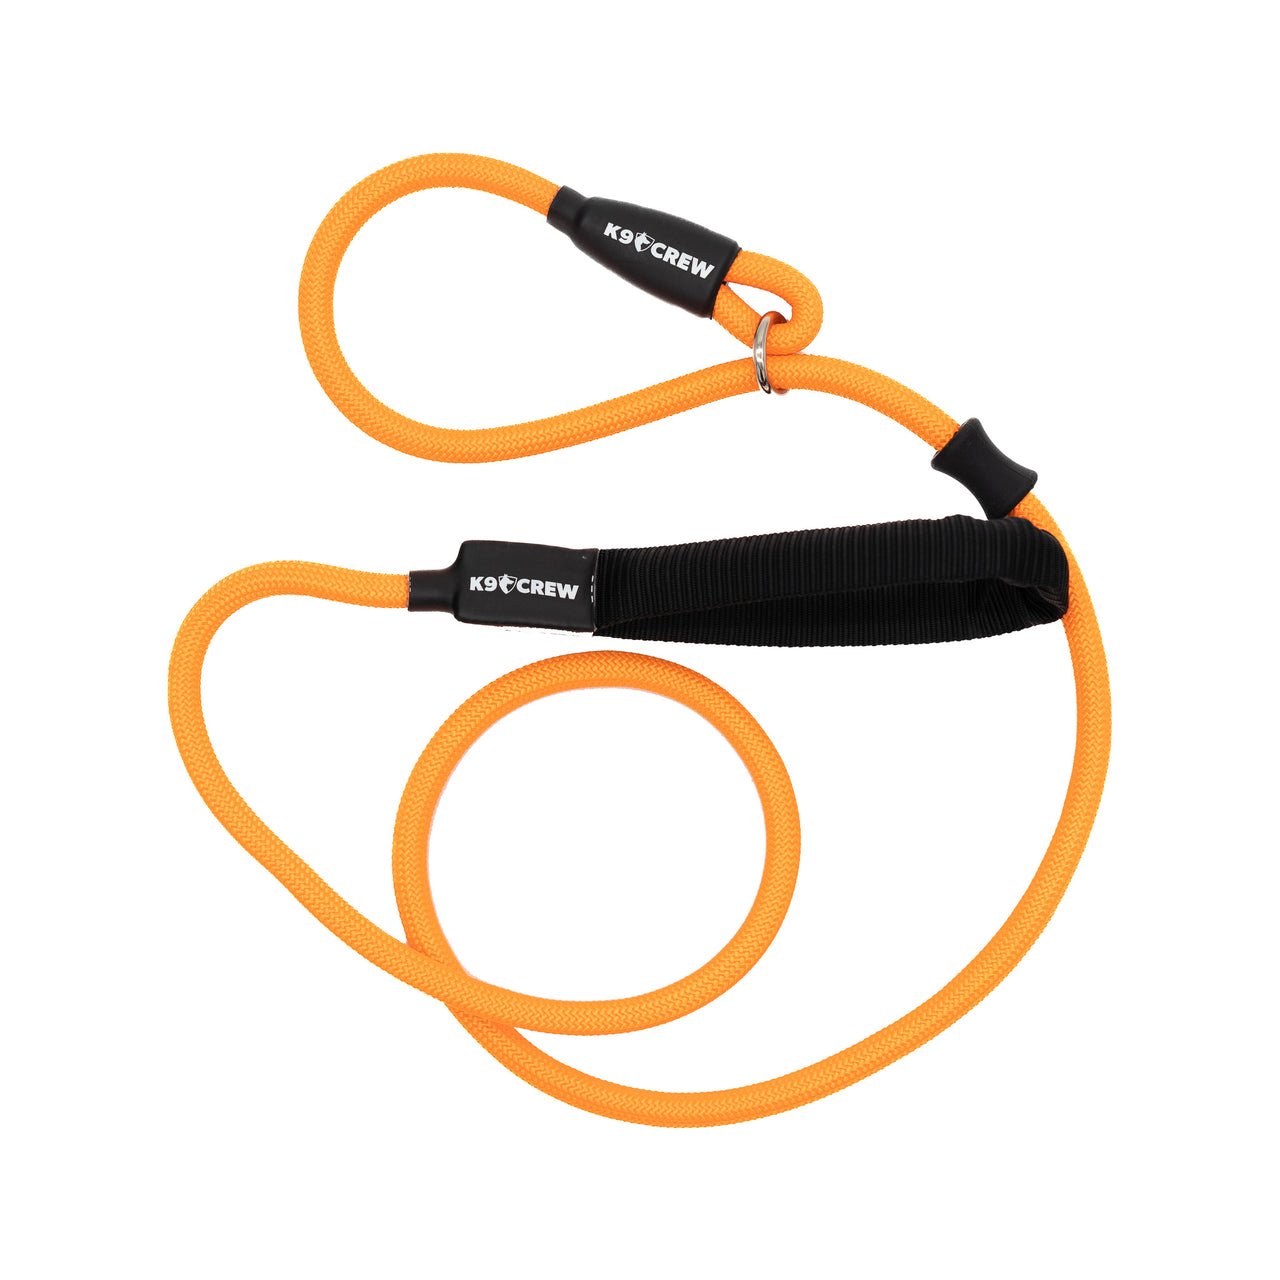 K9Crew Ultra Slip Lead - Orange